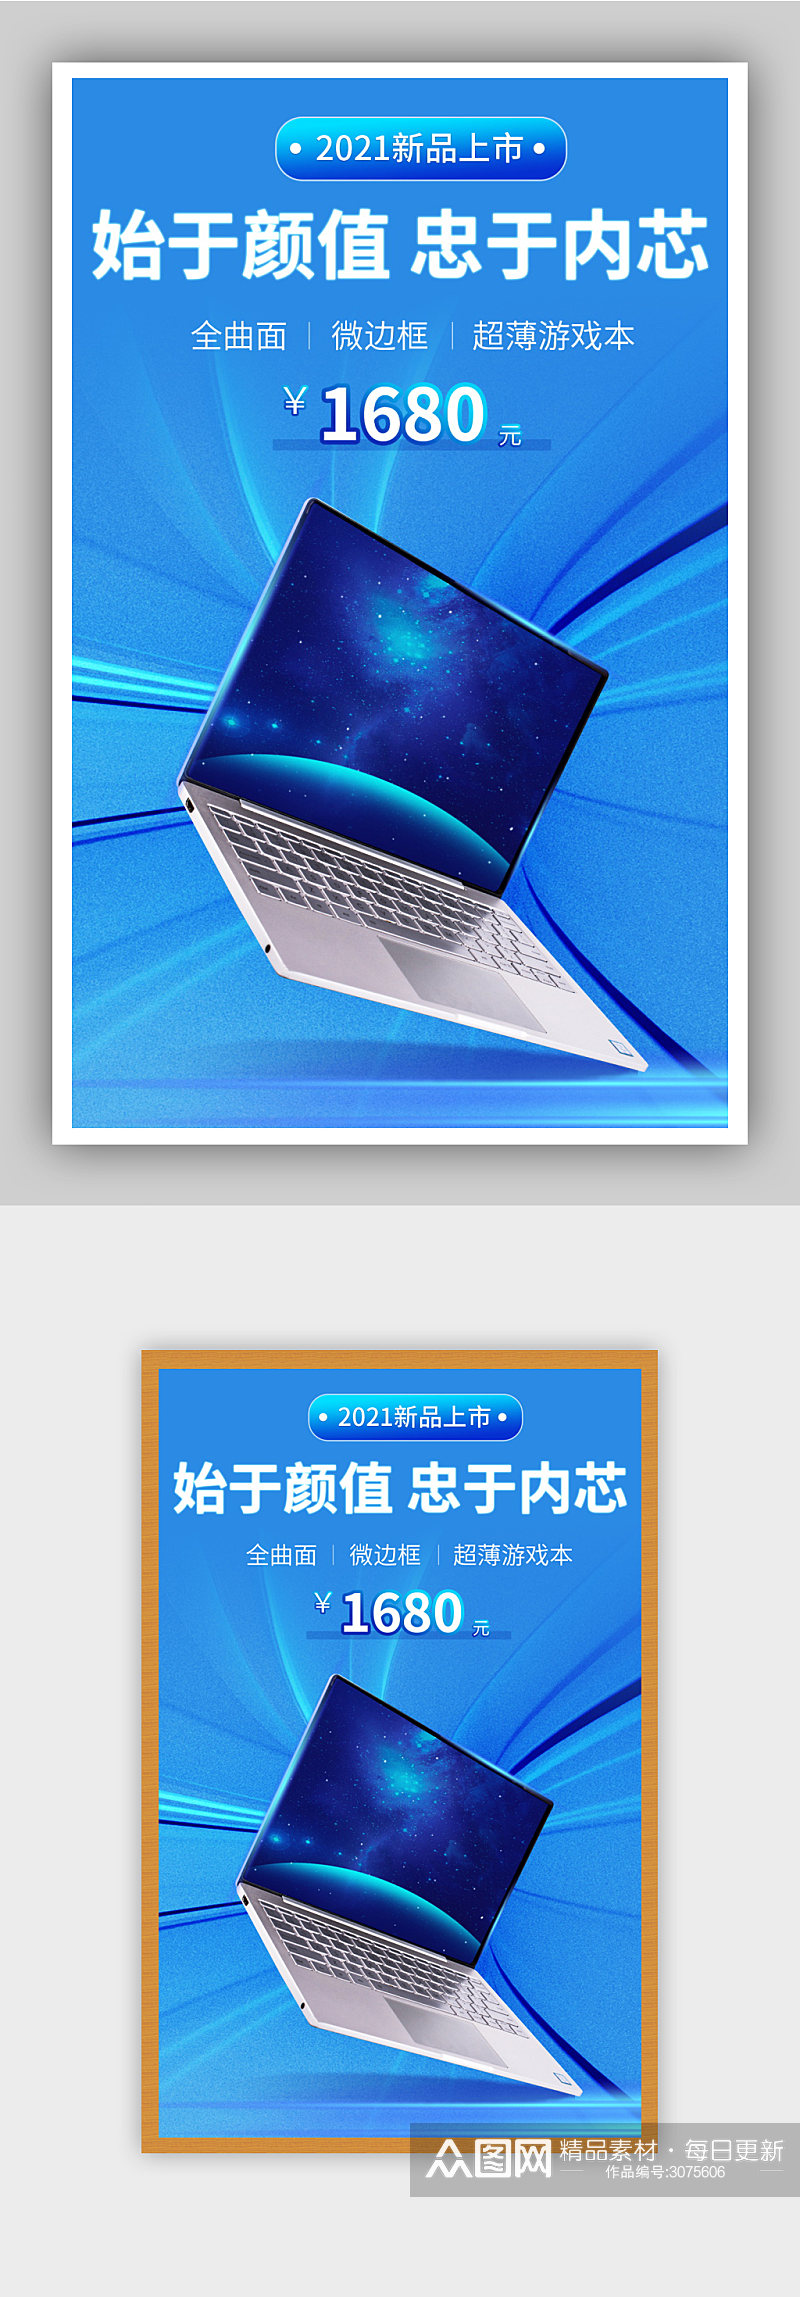 科技风蓝色商务数码笔记本电脑海报素材